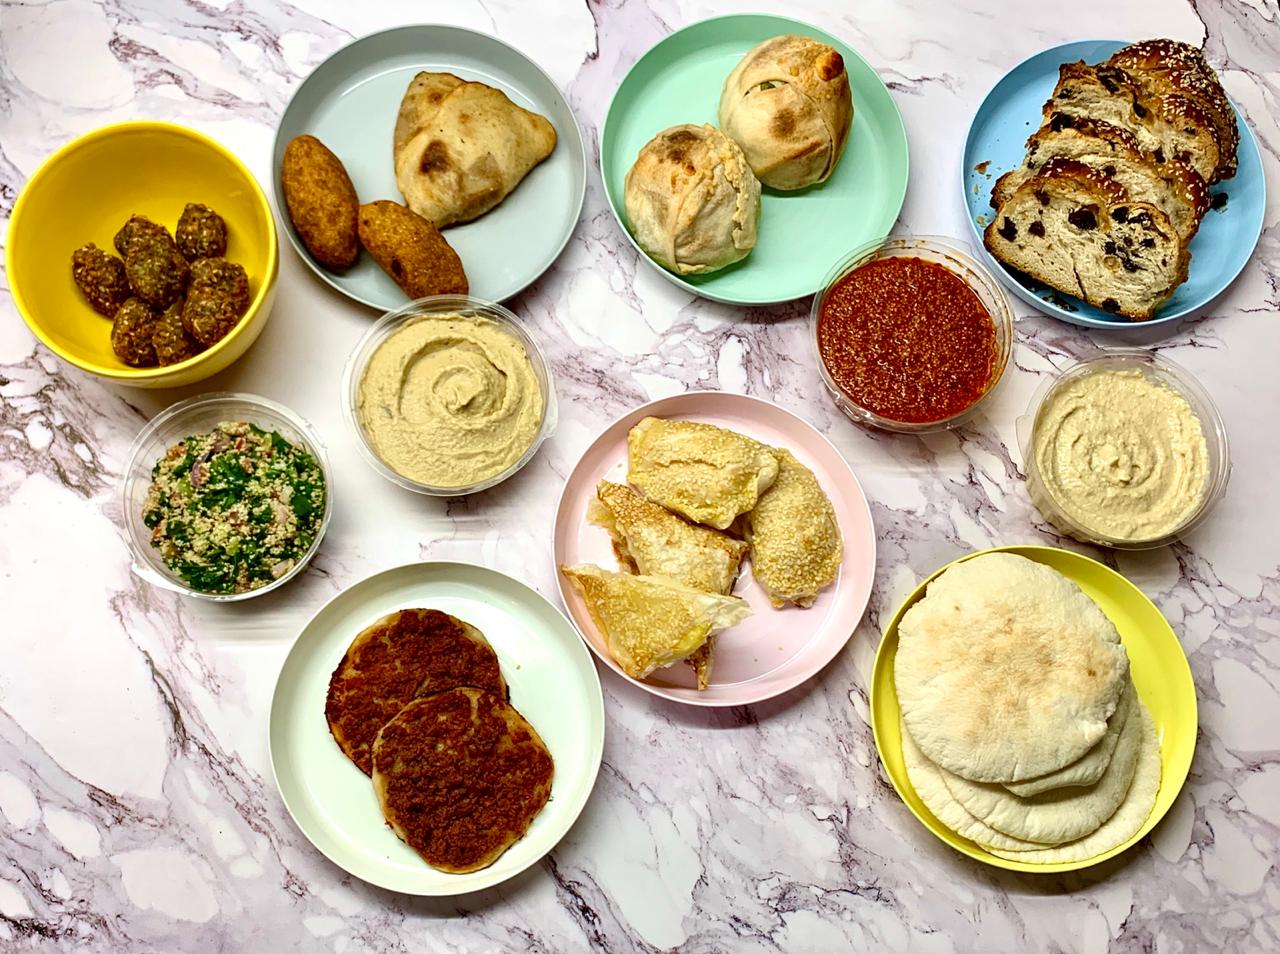 helueni, Comida arabe, cocina arabe, comida sefardí, comida armenia, Fatay, kebbe, Hummus, humus